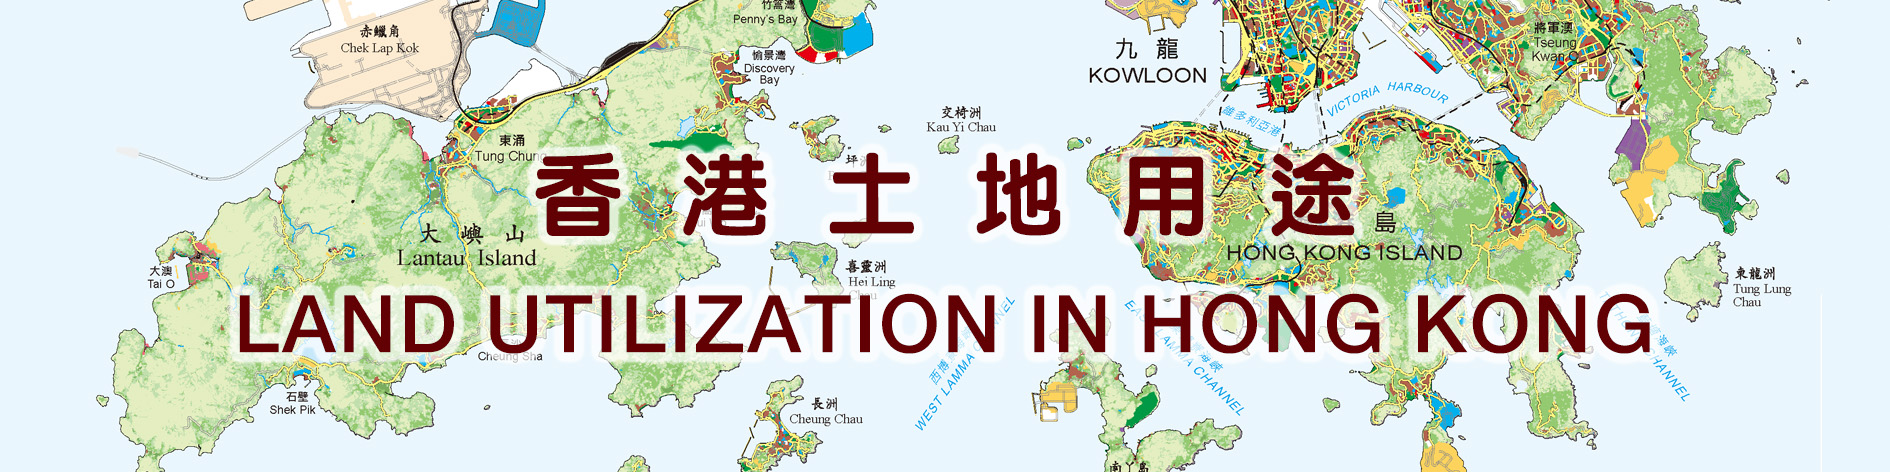 香港土地用途圖